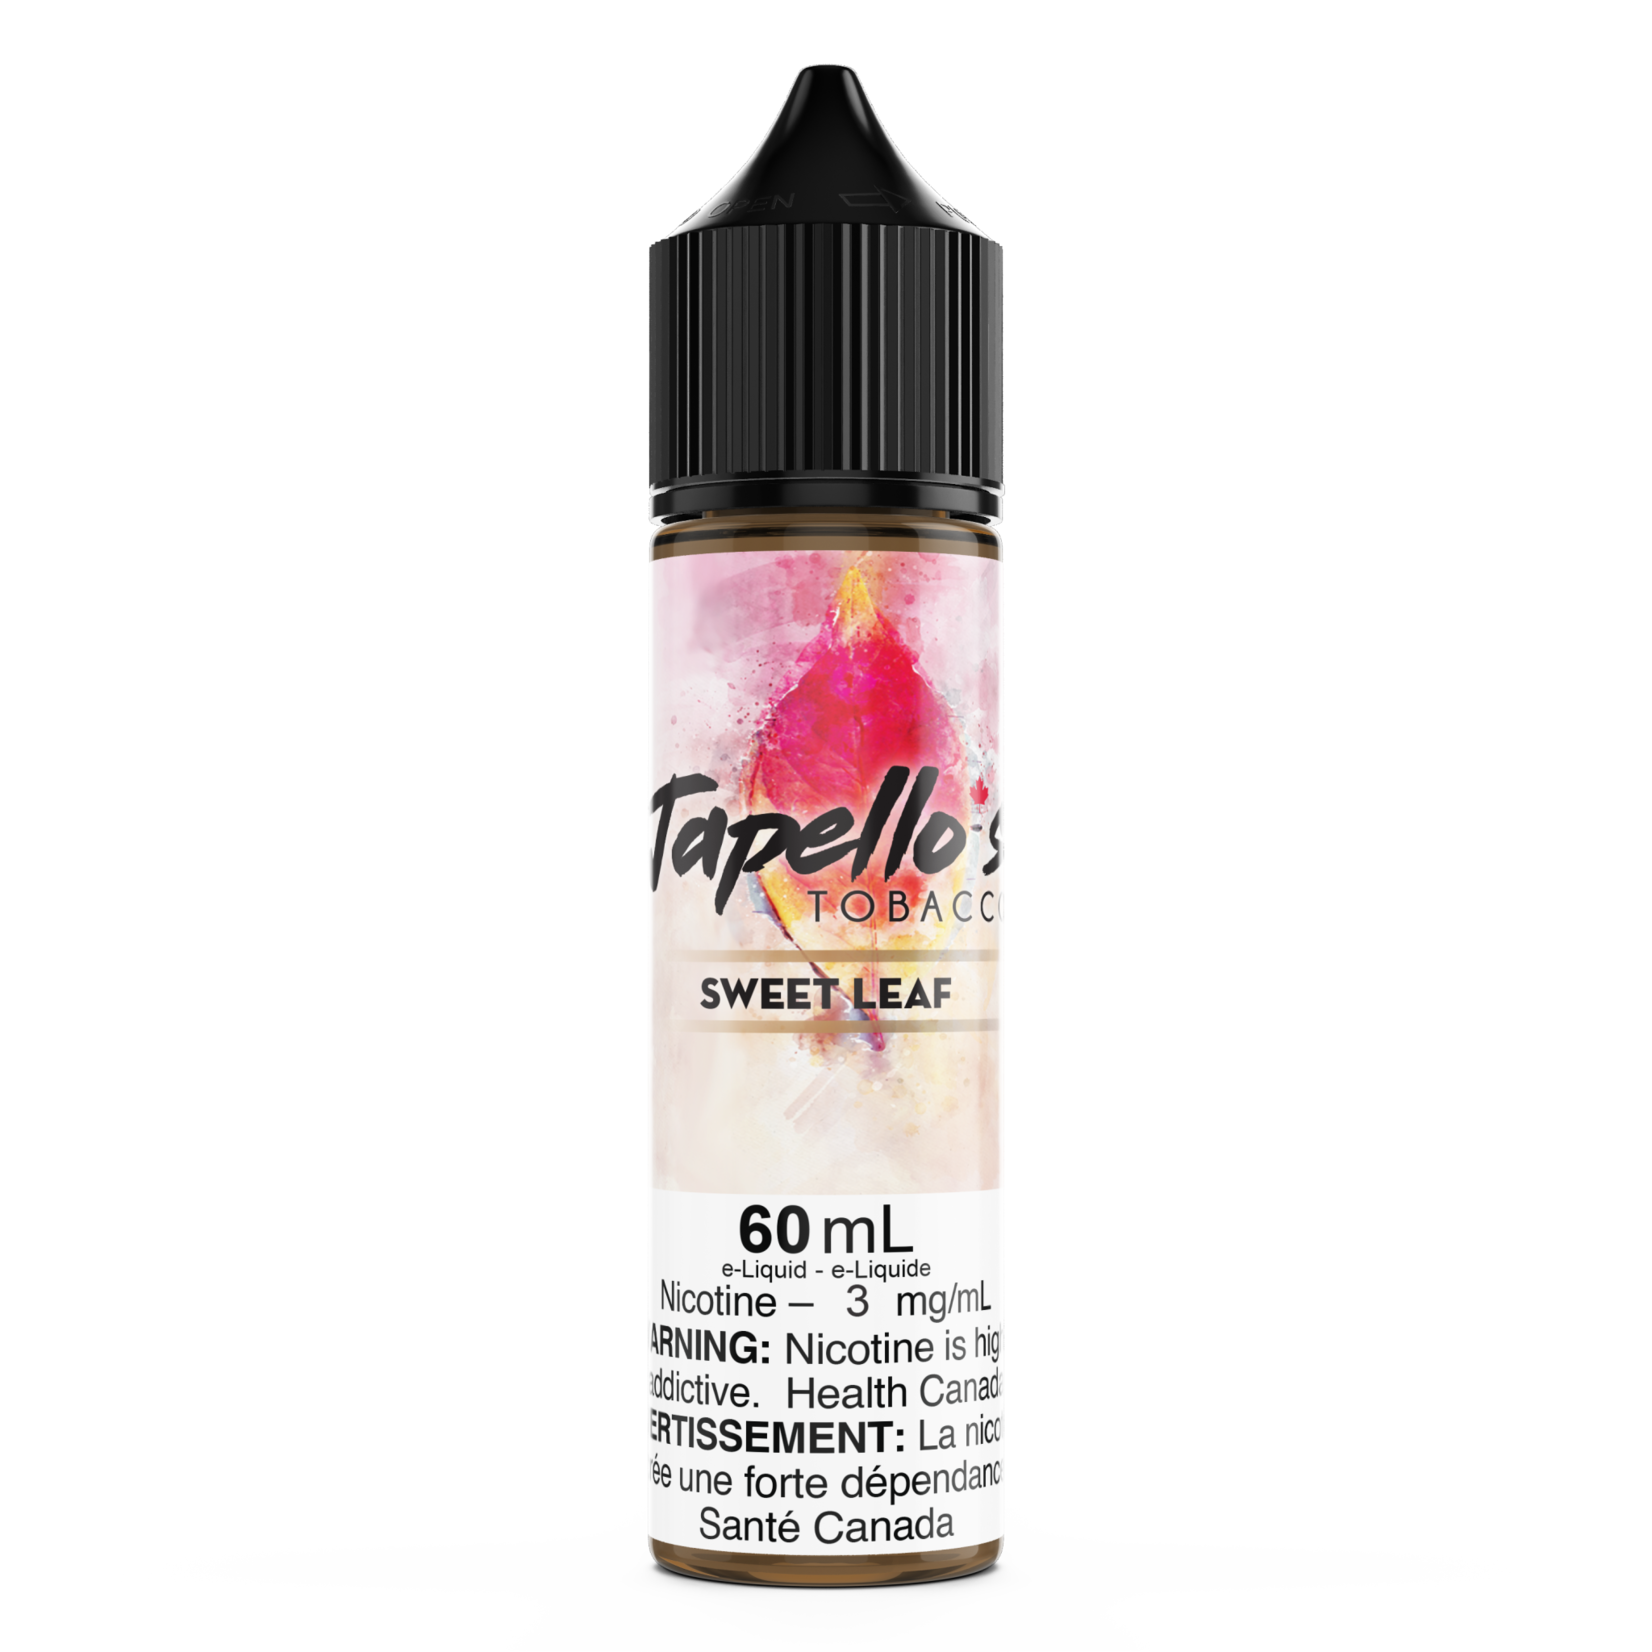 Tagged Japello's Tobacco